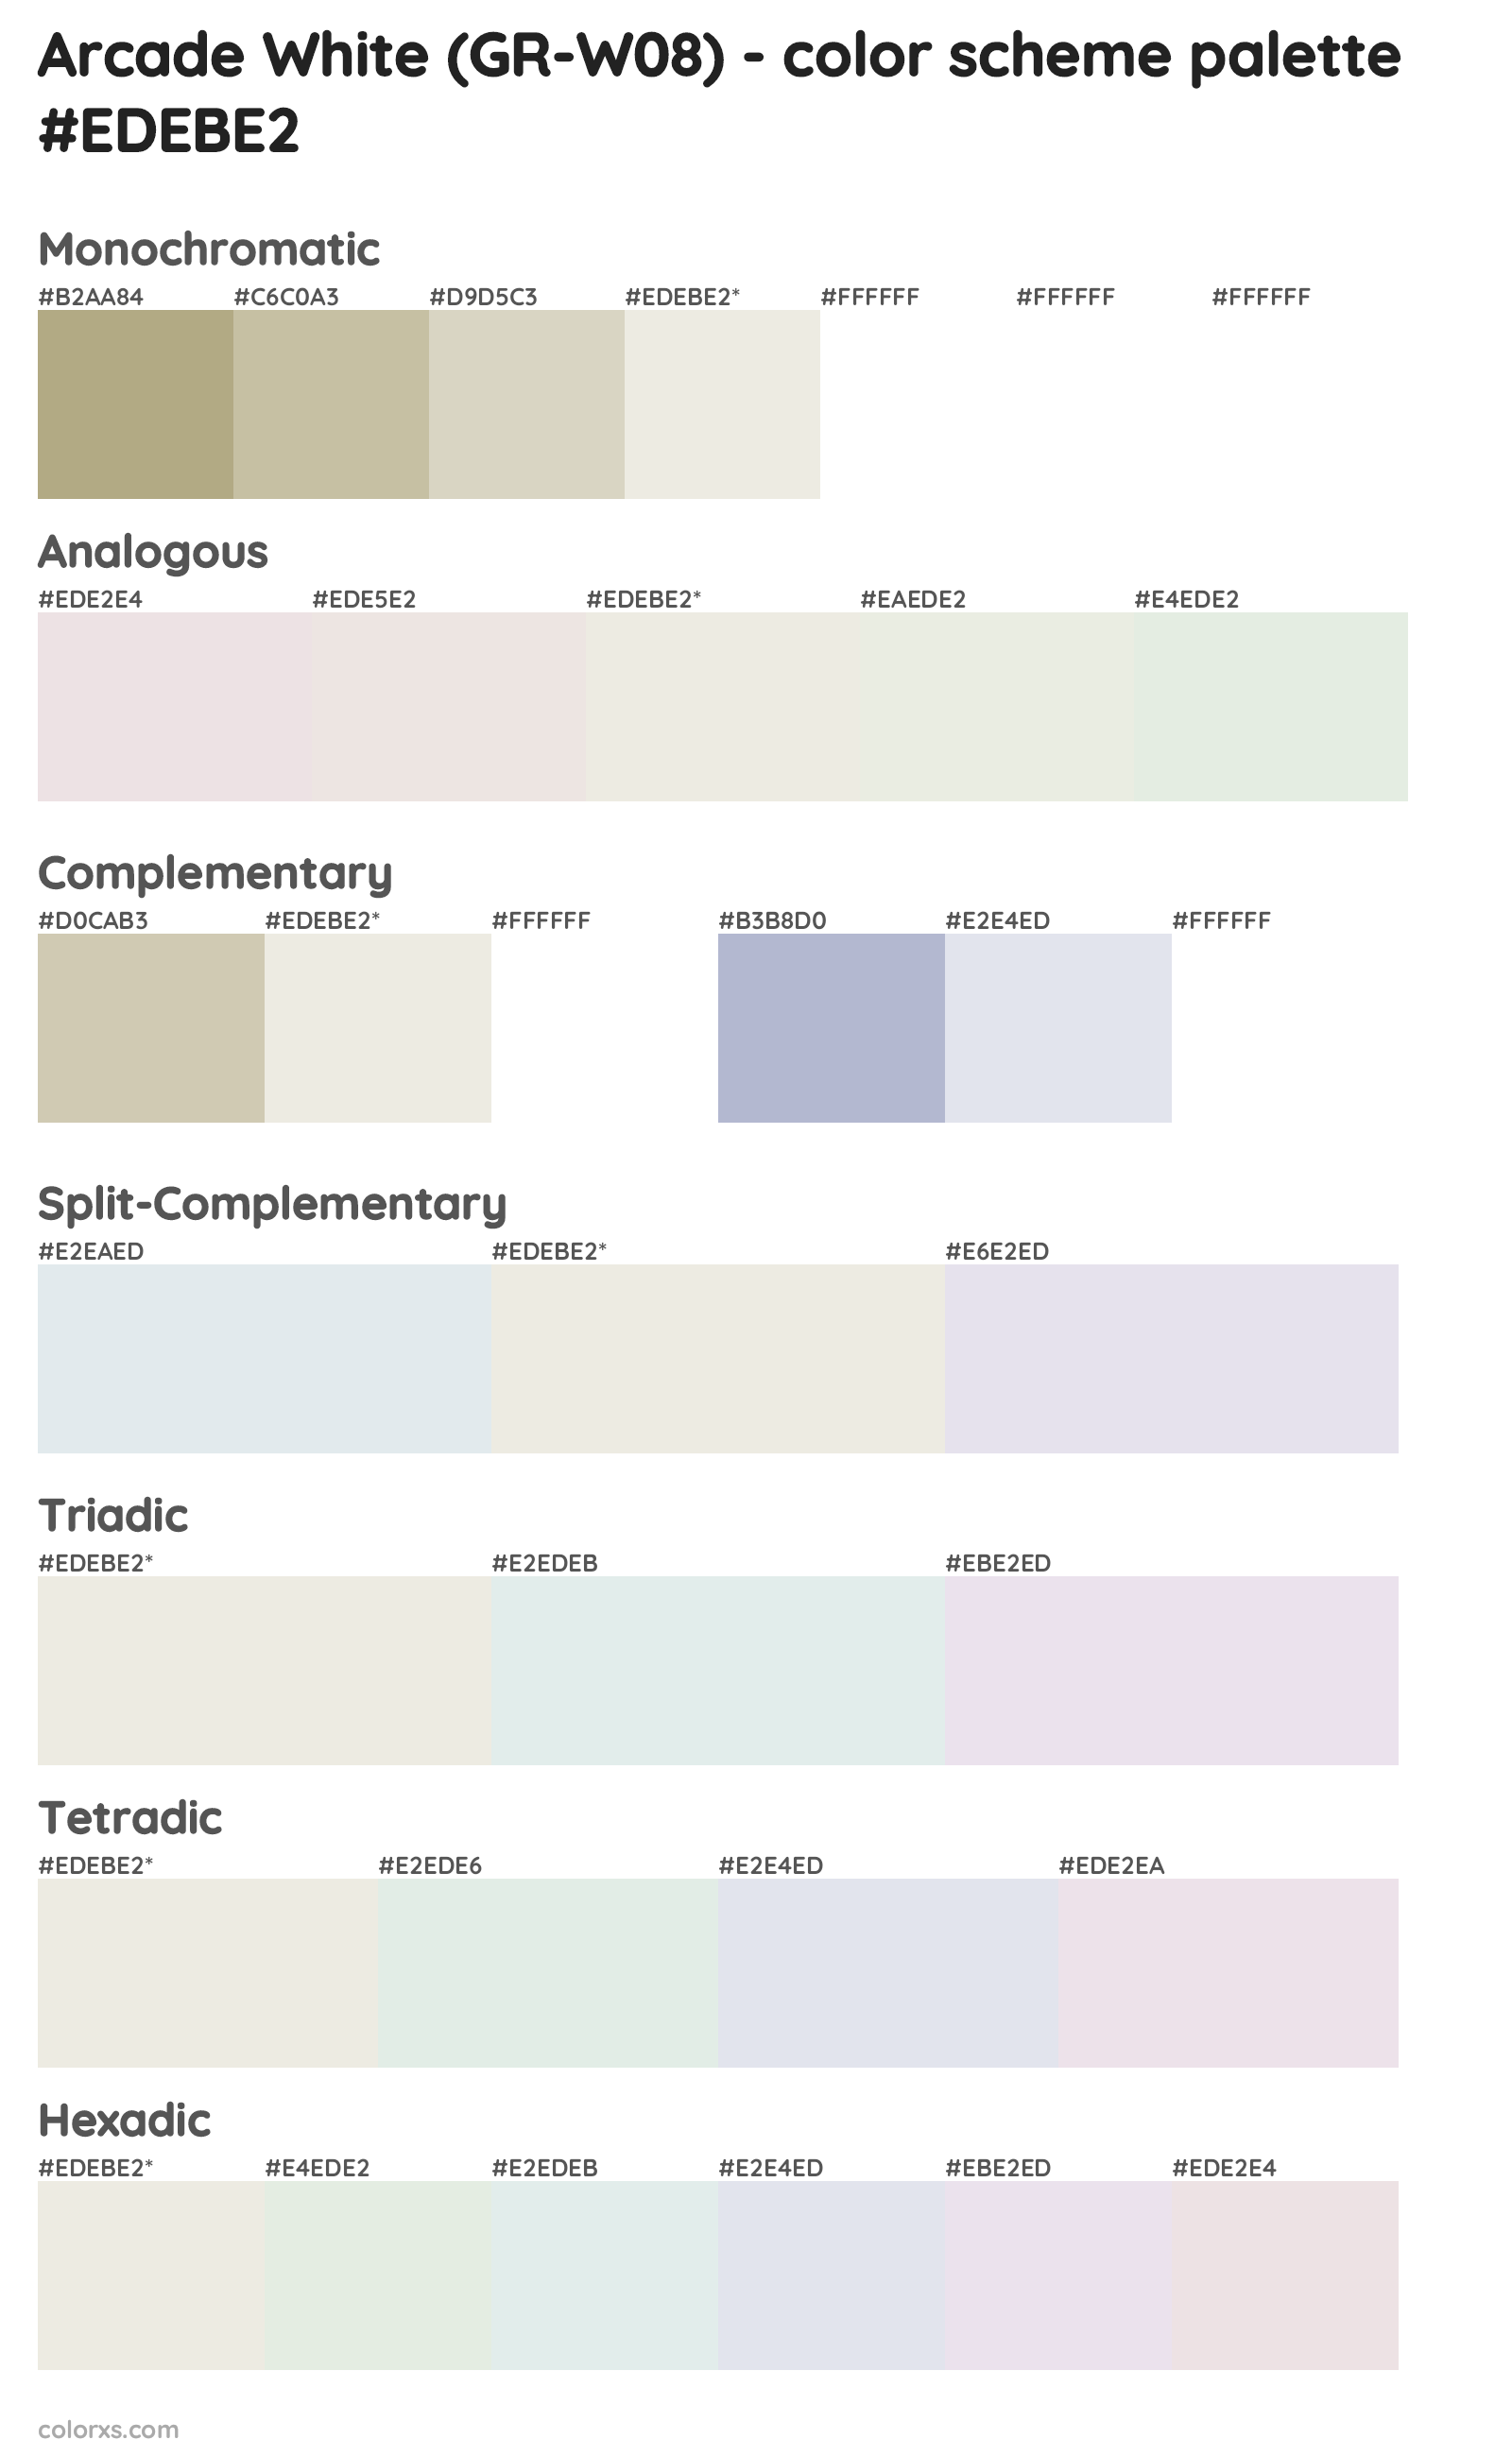 Arcade White (GR-W08) Color Scheme Palettes